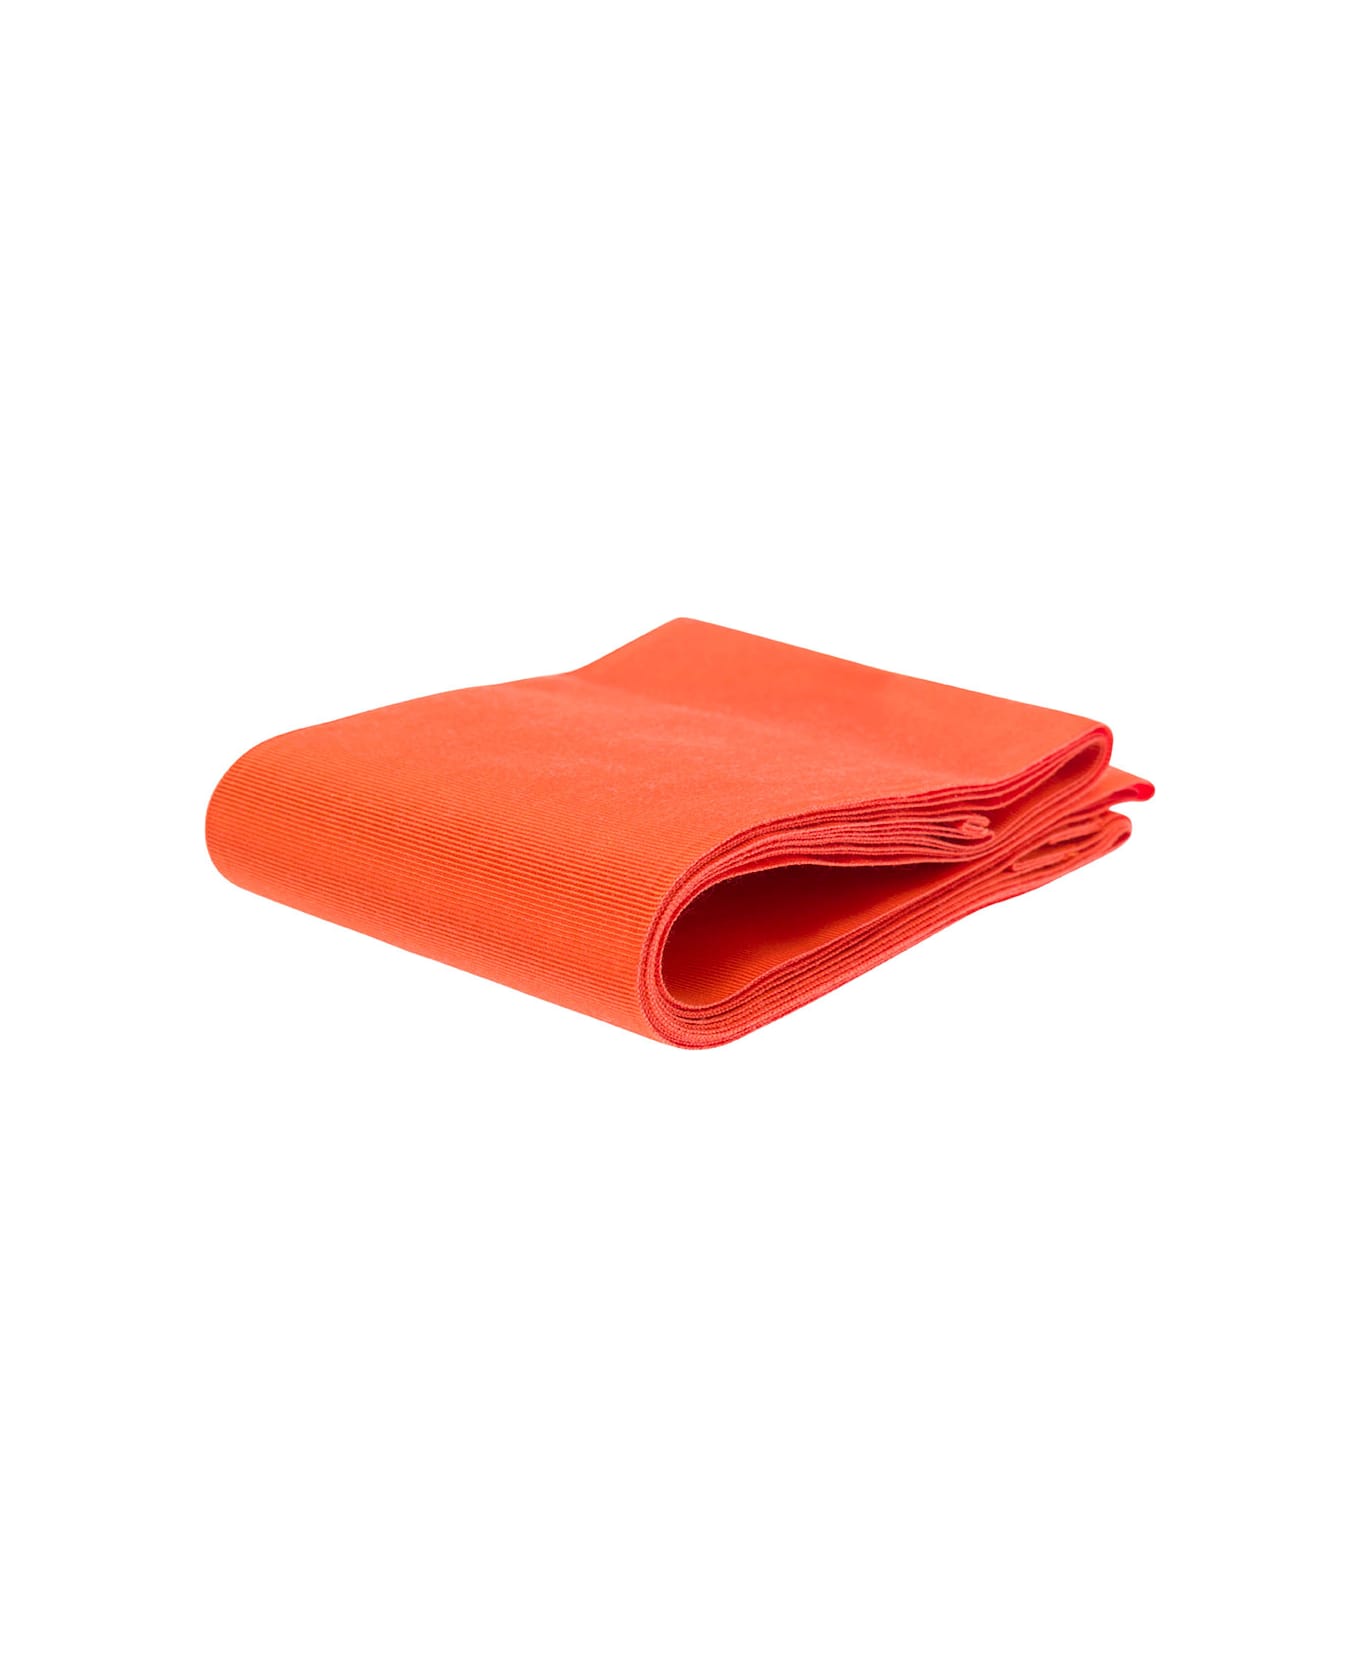 Sara Roka Orange Monochrome Sash In Cotton Blend Woman - Orange